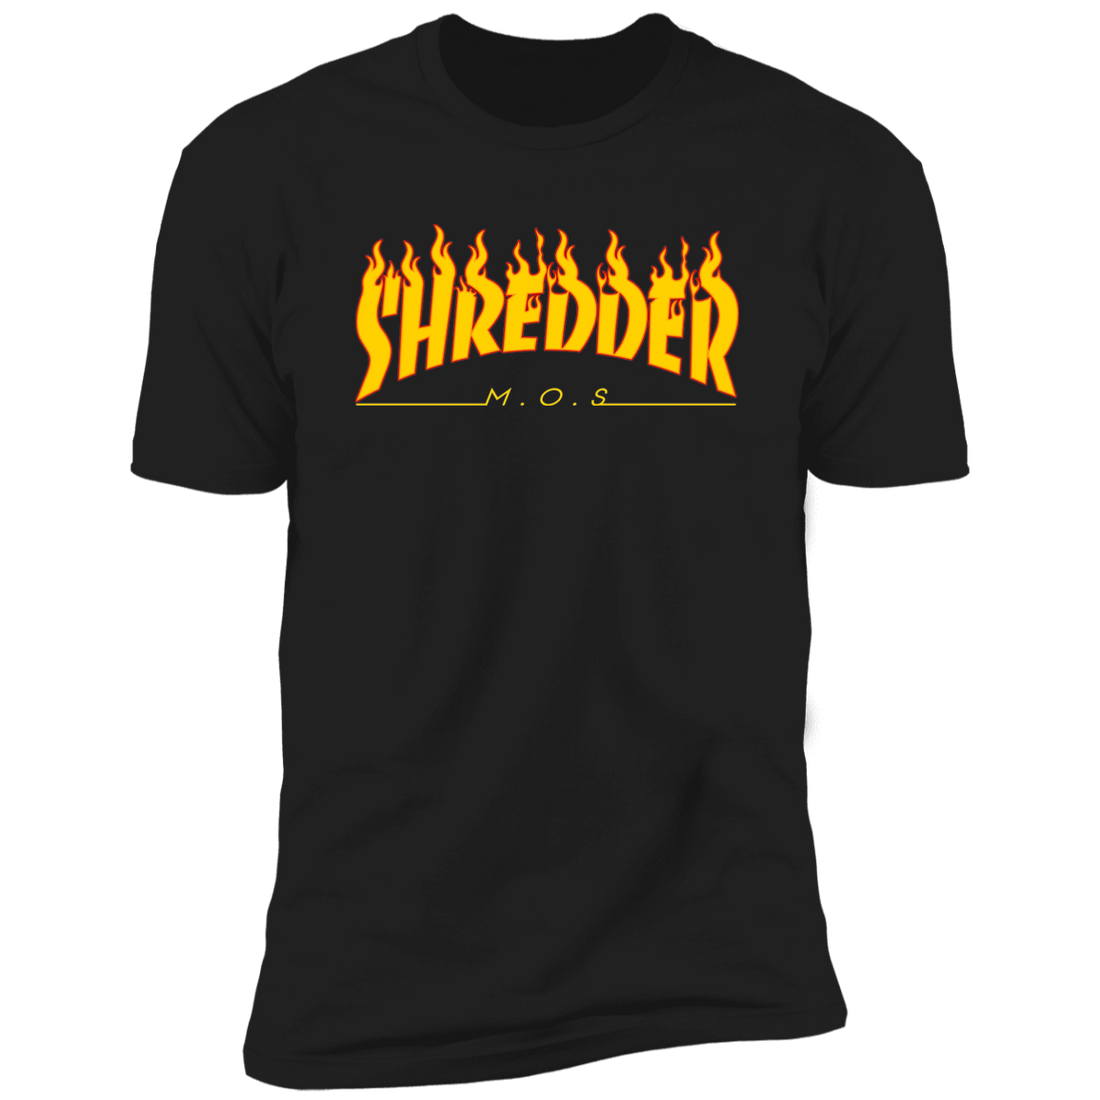 Shred or Die